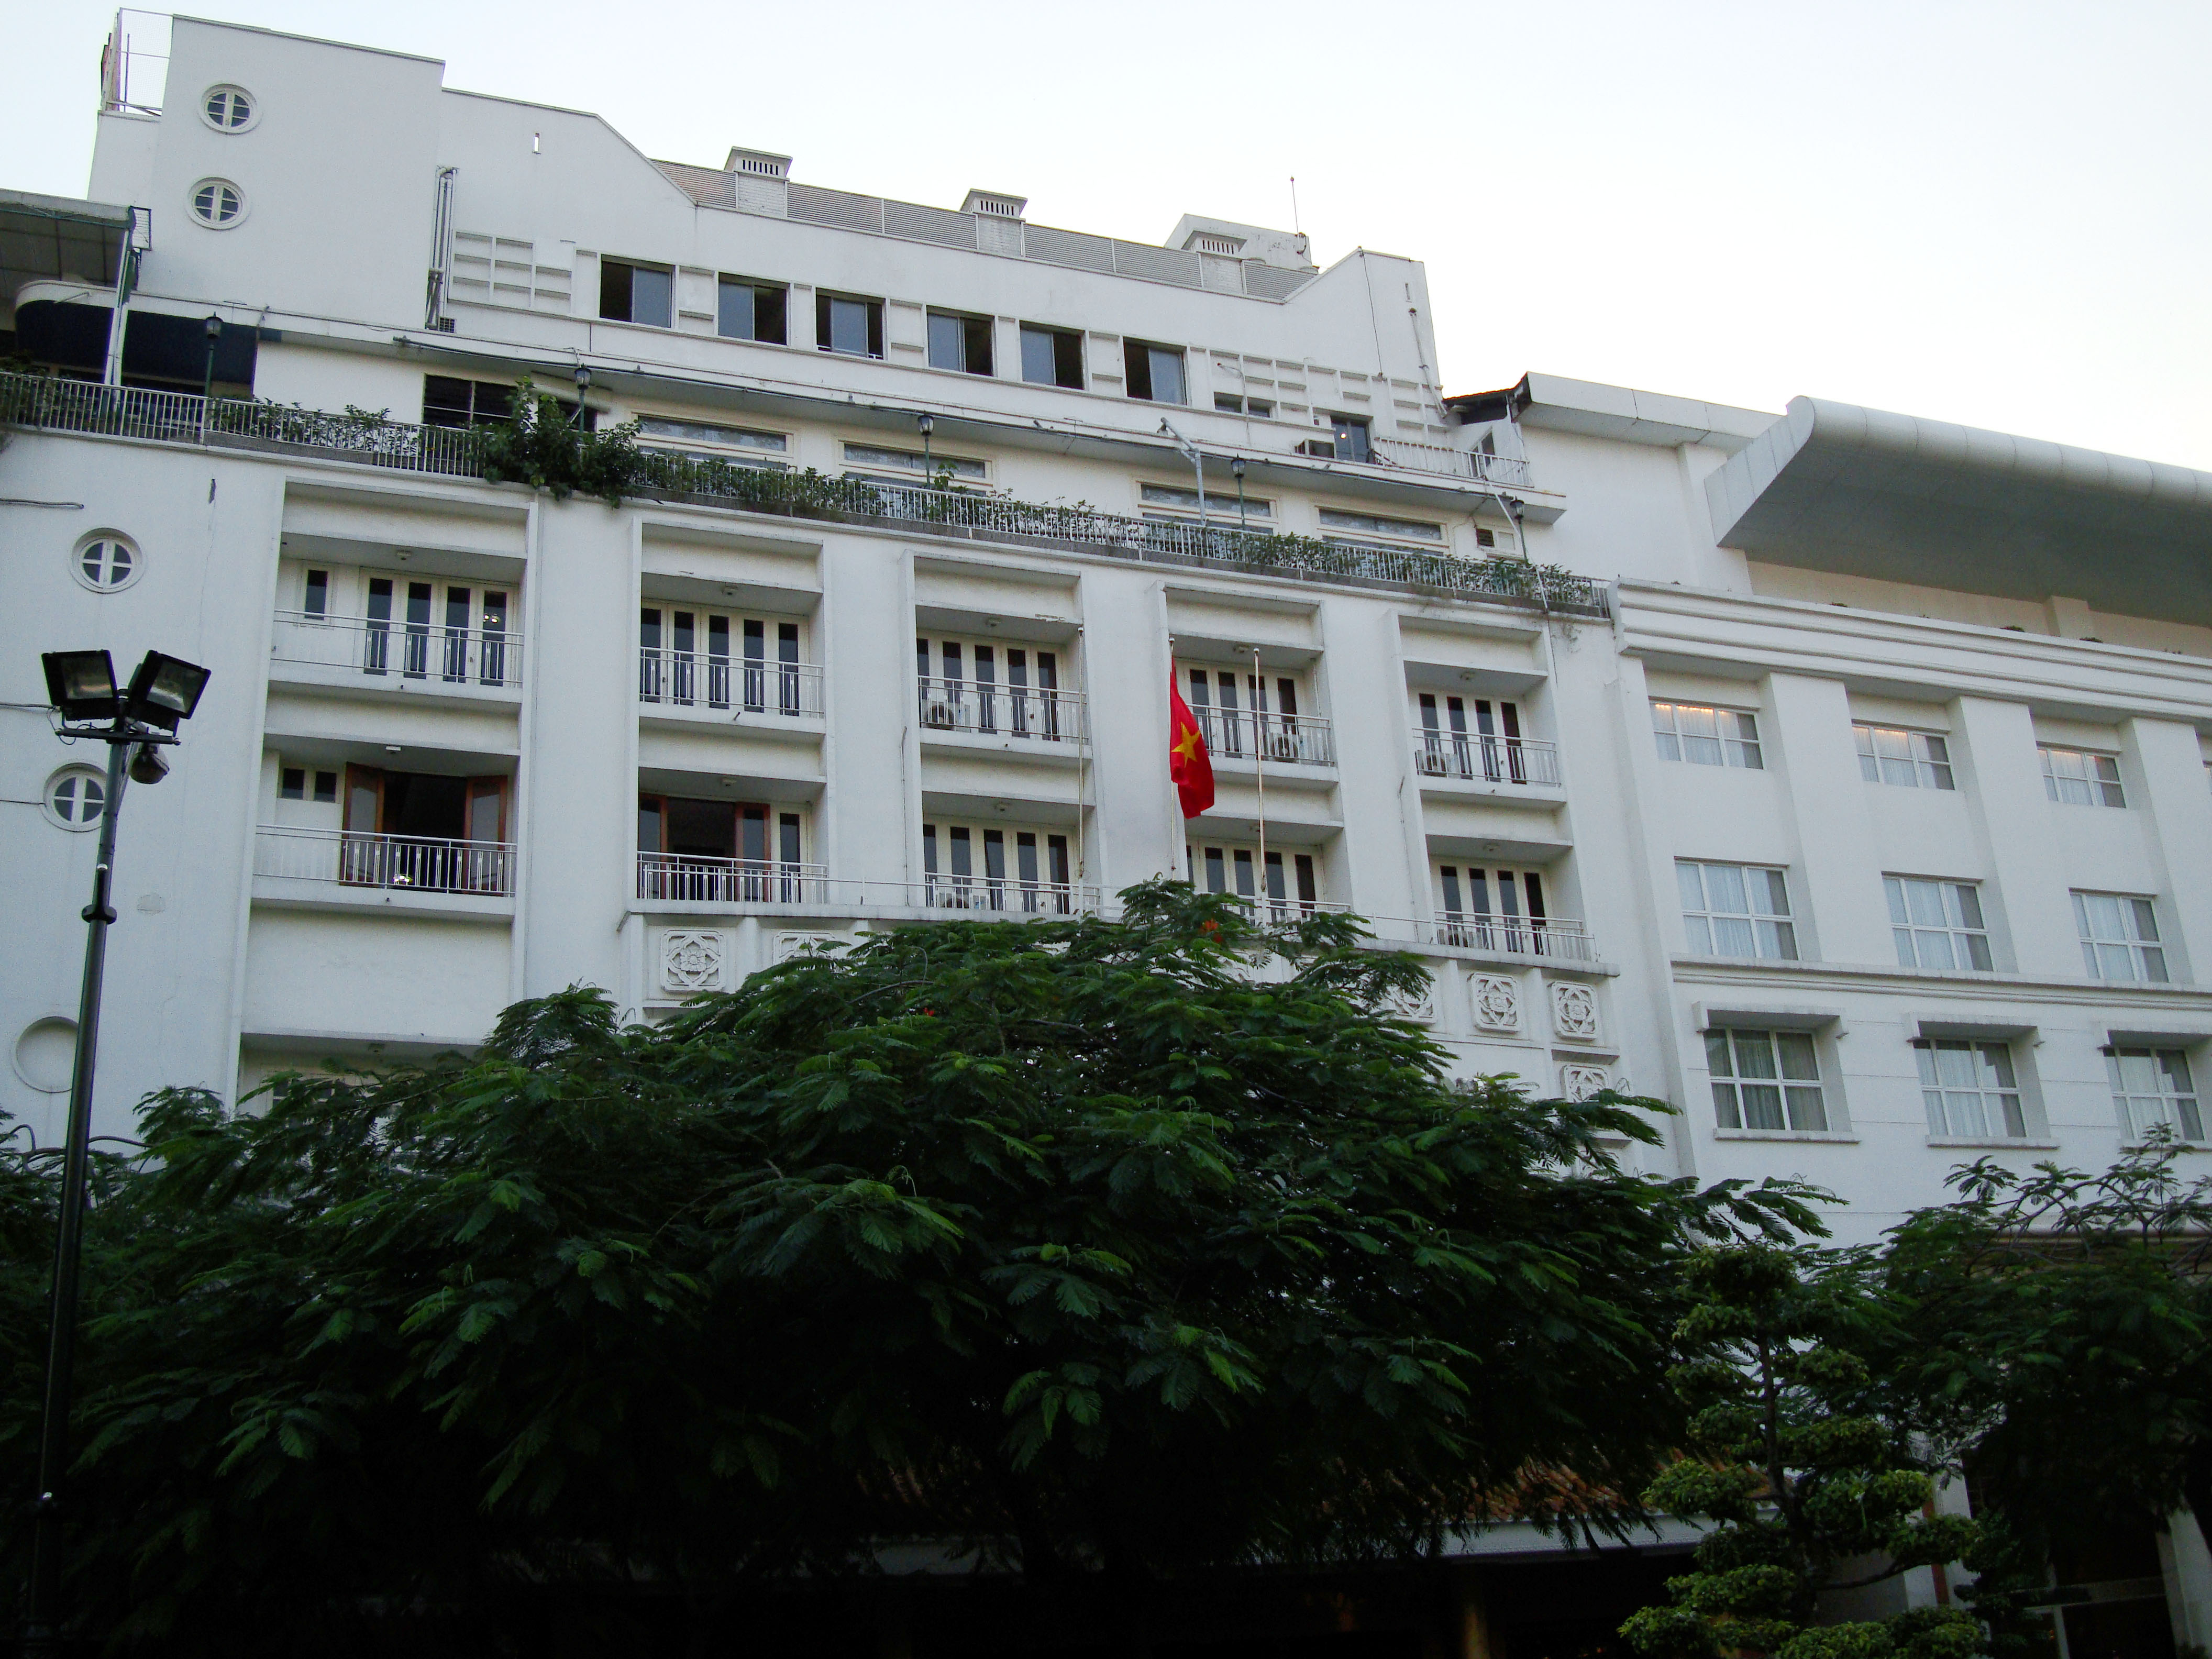 Saigon HCMC Rex Hotel Nov 2009 01